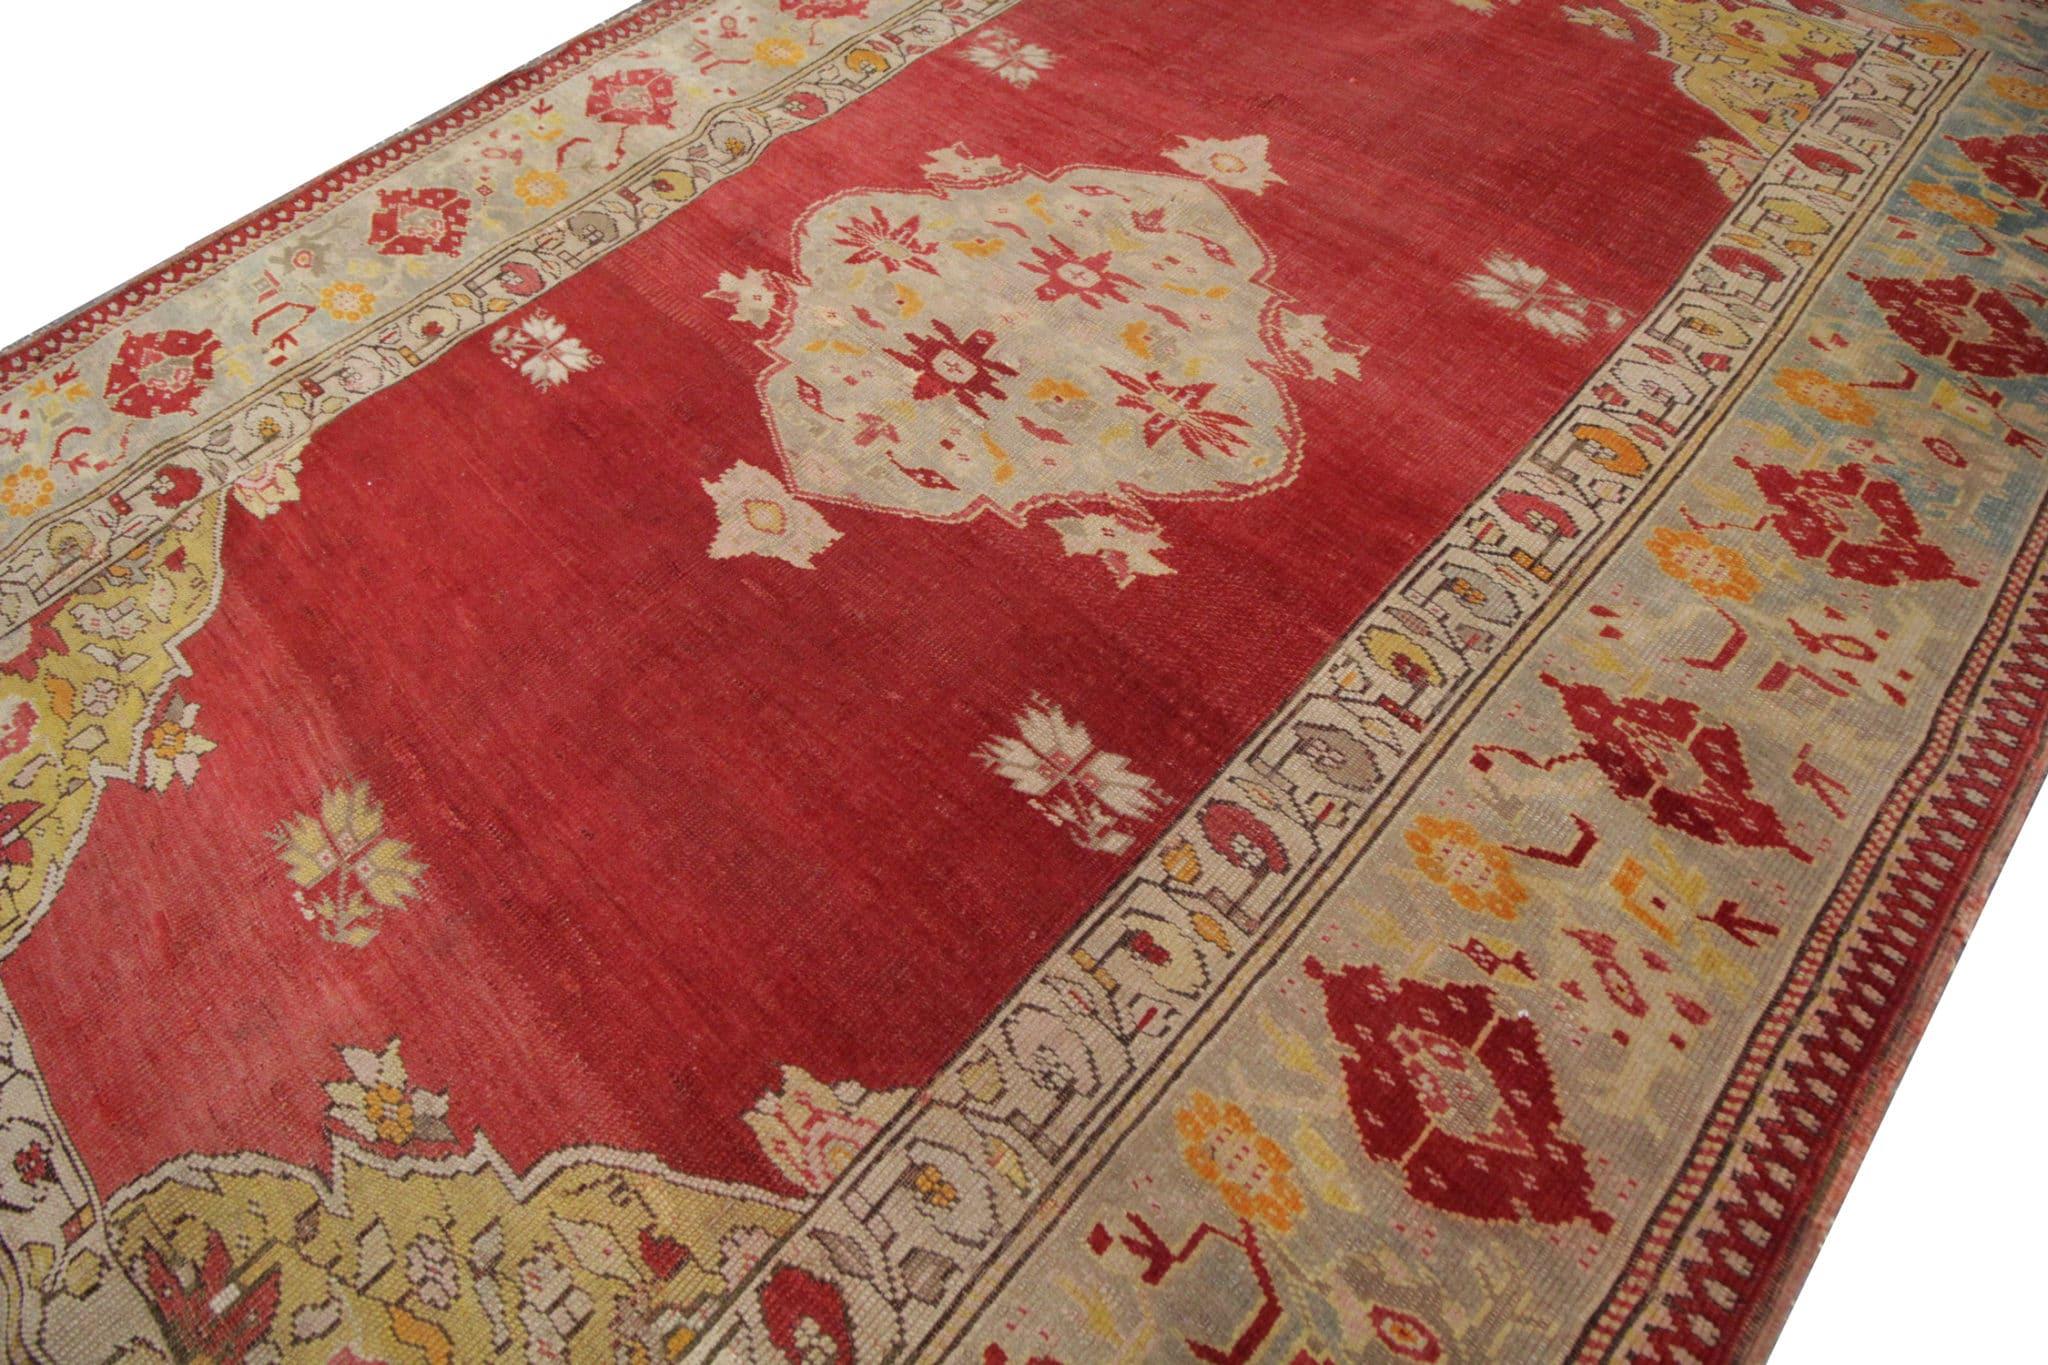 Dieser handgefertigte Orientteppich aus den 1890er Jahren ist ein exquisites Stück aus der Geschichte, das die beste Handwerkskunst seiner Zeit zeigt. Mit Präzision handgeknüpft, strahlt er eine Authentizität und Eleganz aus, die jeden Wohnraum